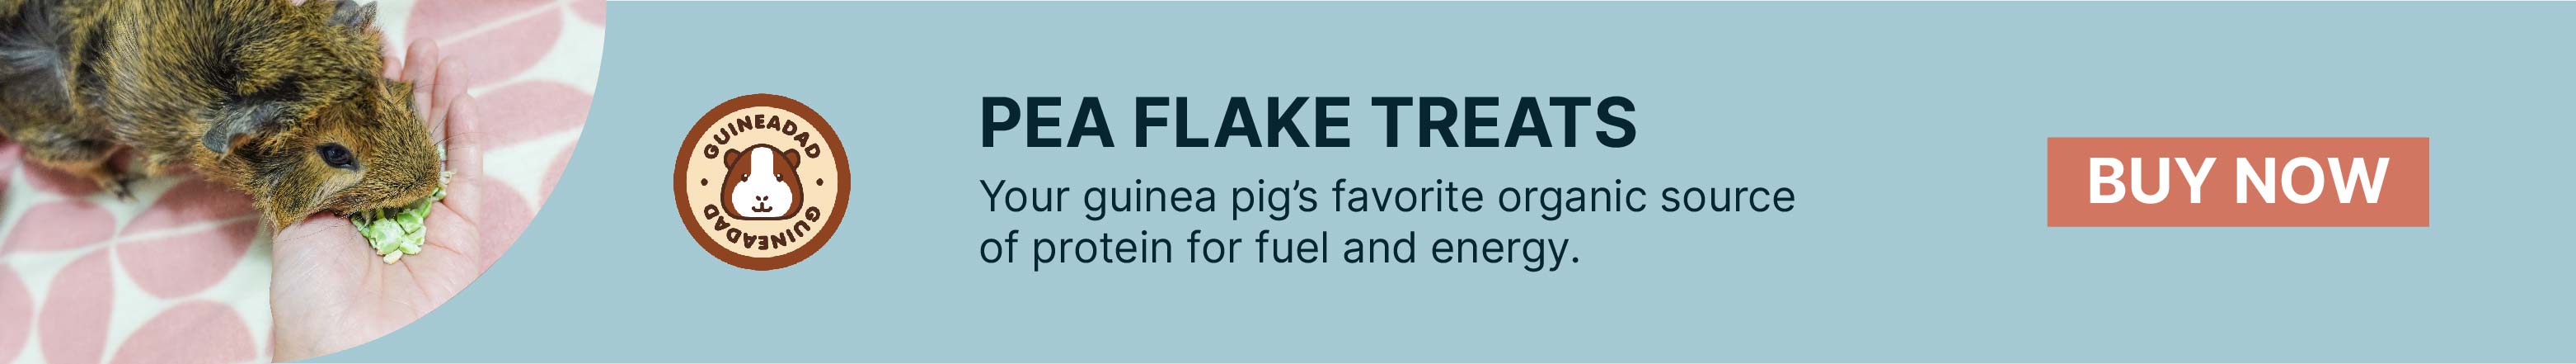 Guinea pig eating pea flakes